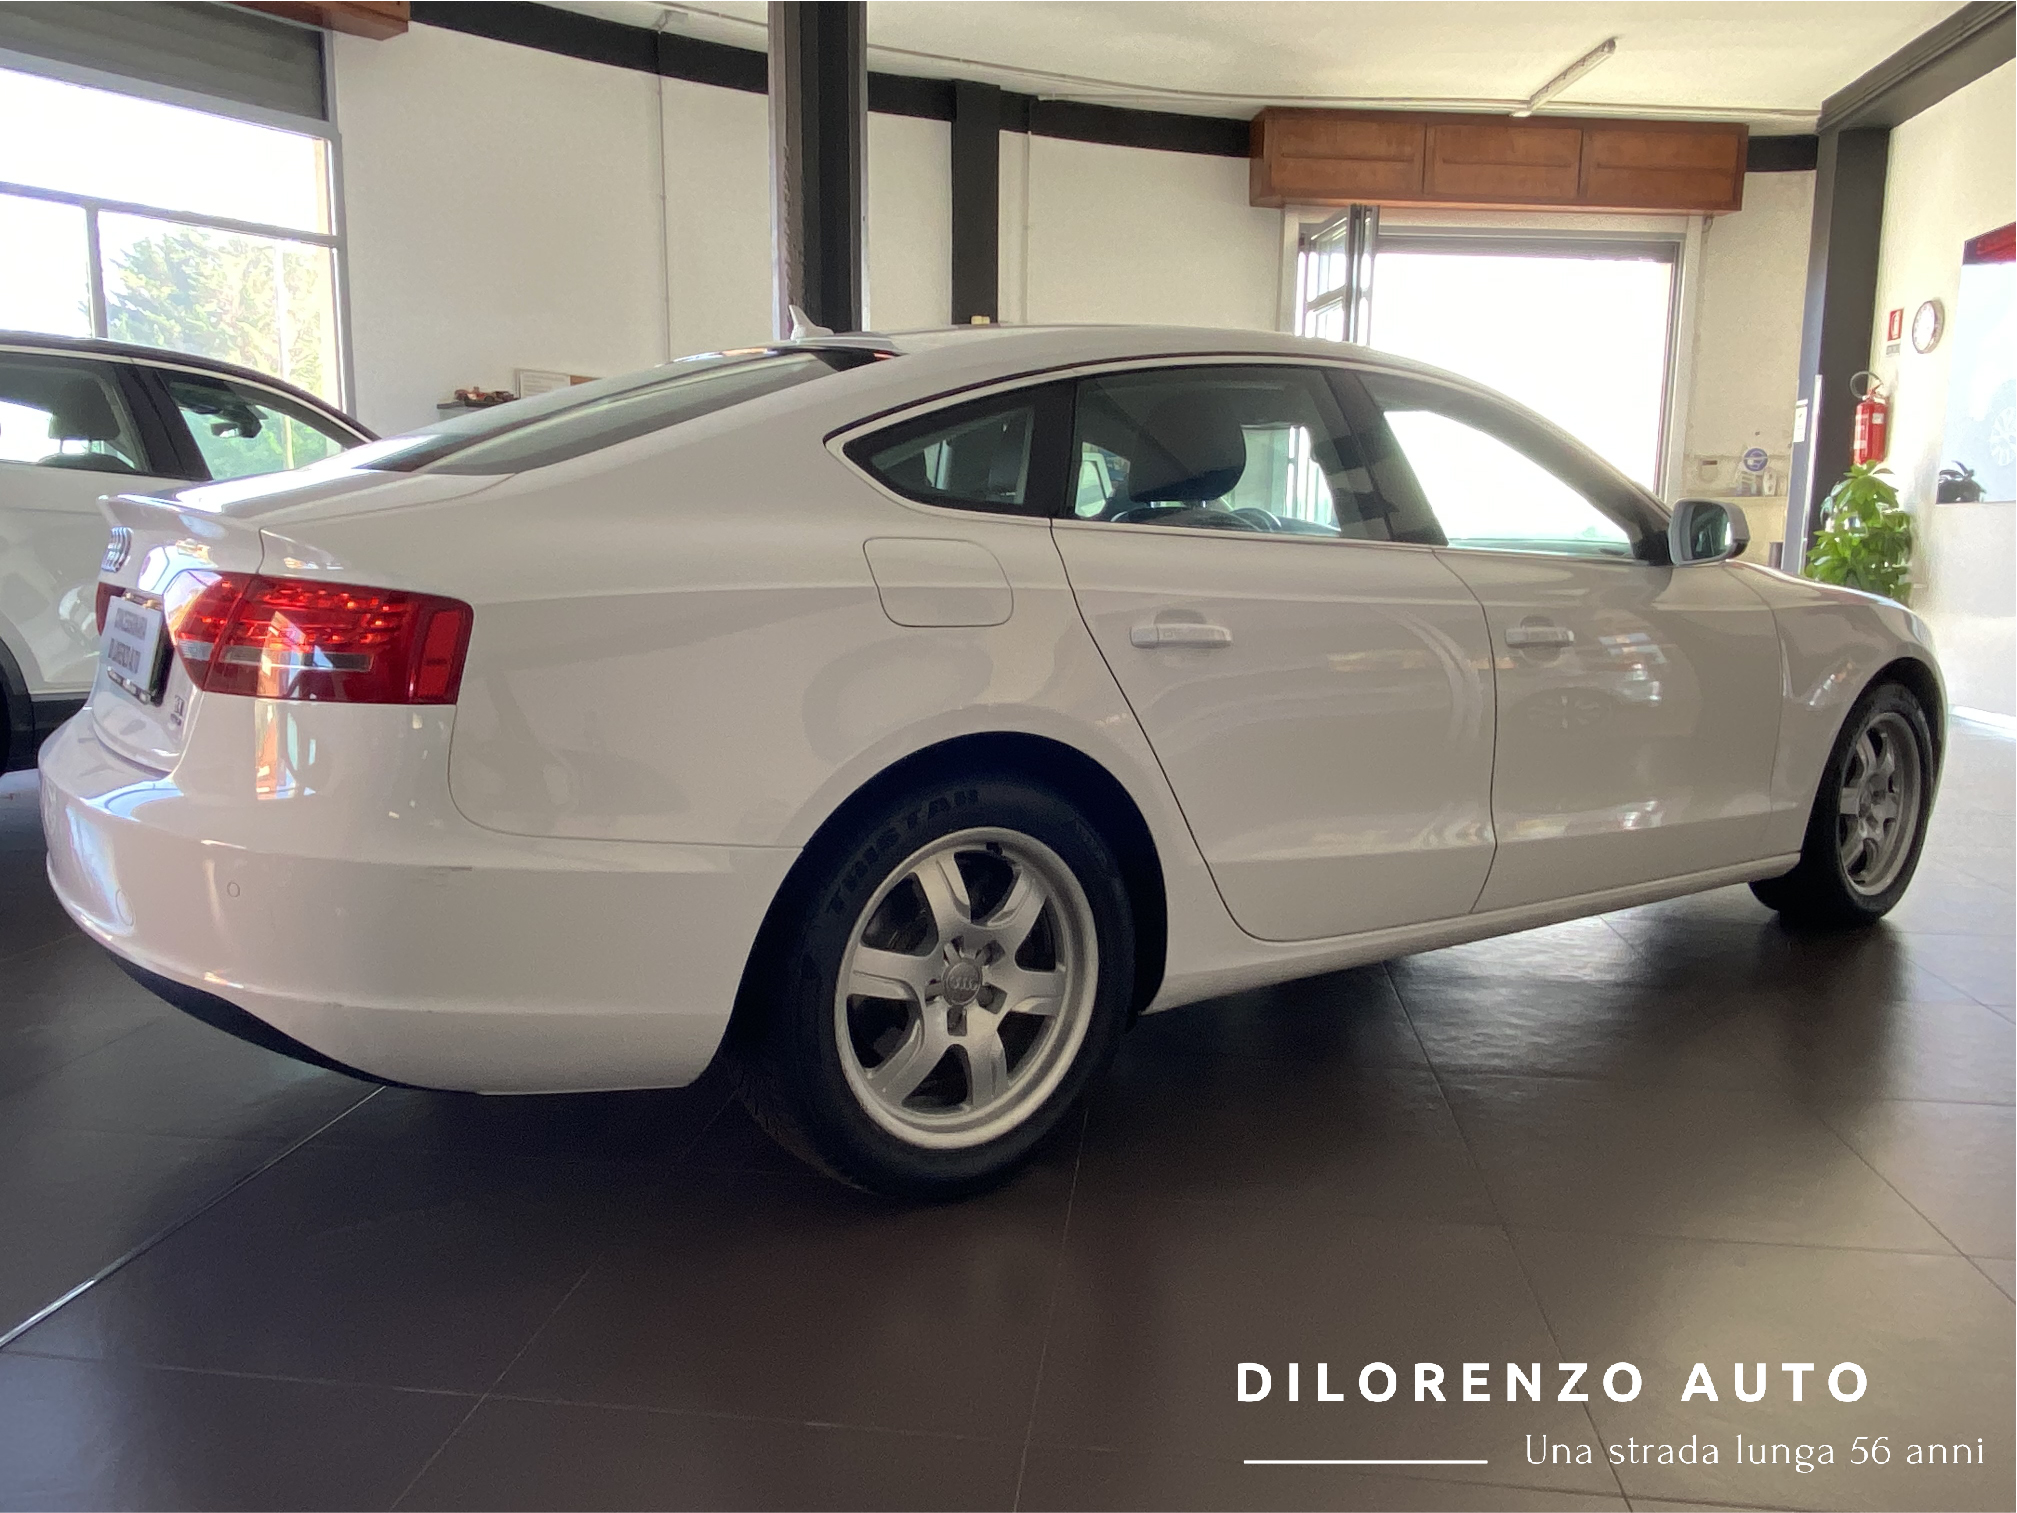 Audi A5 - 13.500 - Di Lorenzo Auto Leverano (Le)